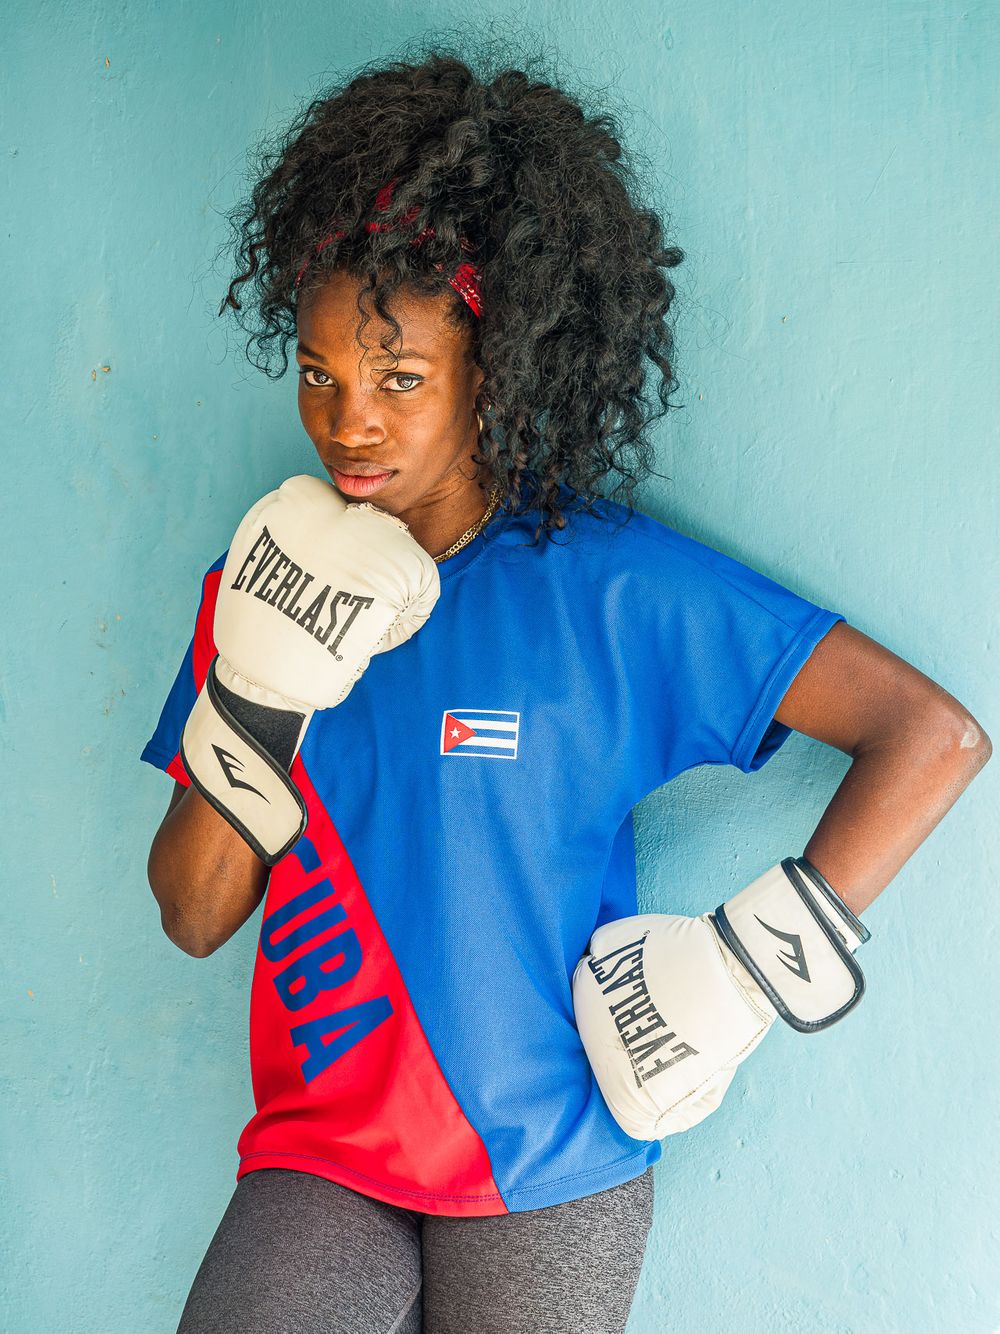 cuba_legnis_cala_masso_female_boxer_portrait.jpg